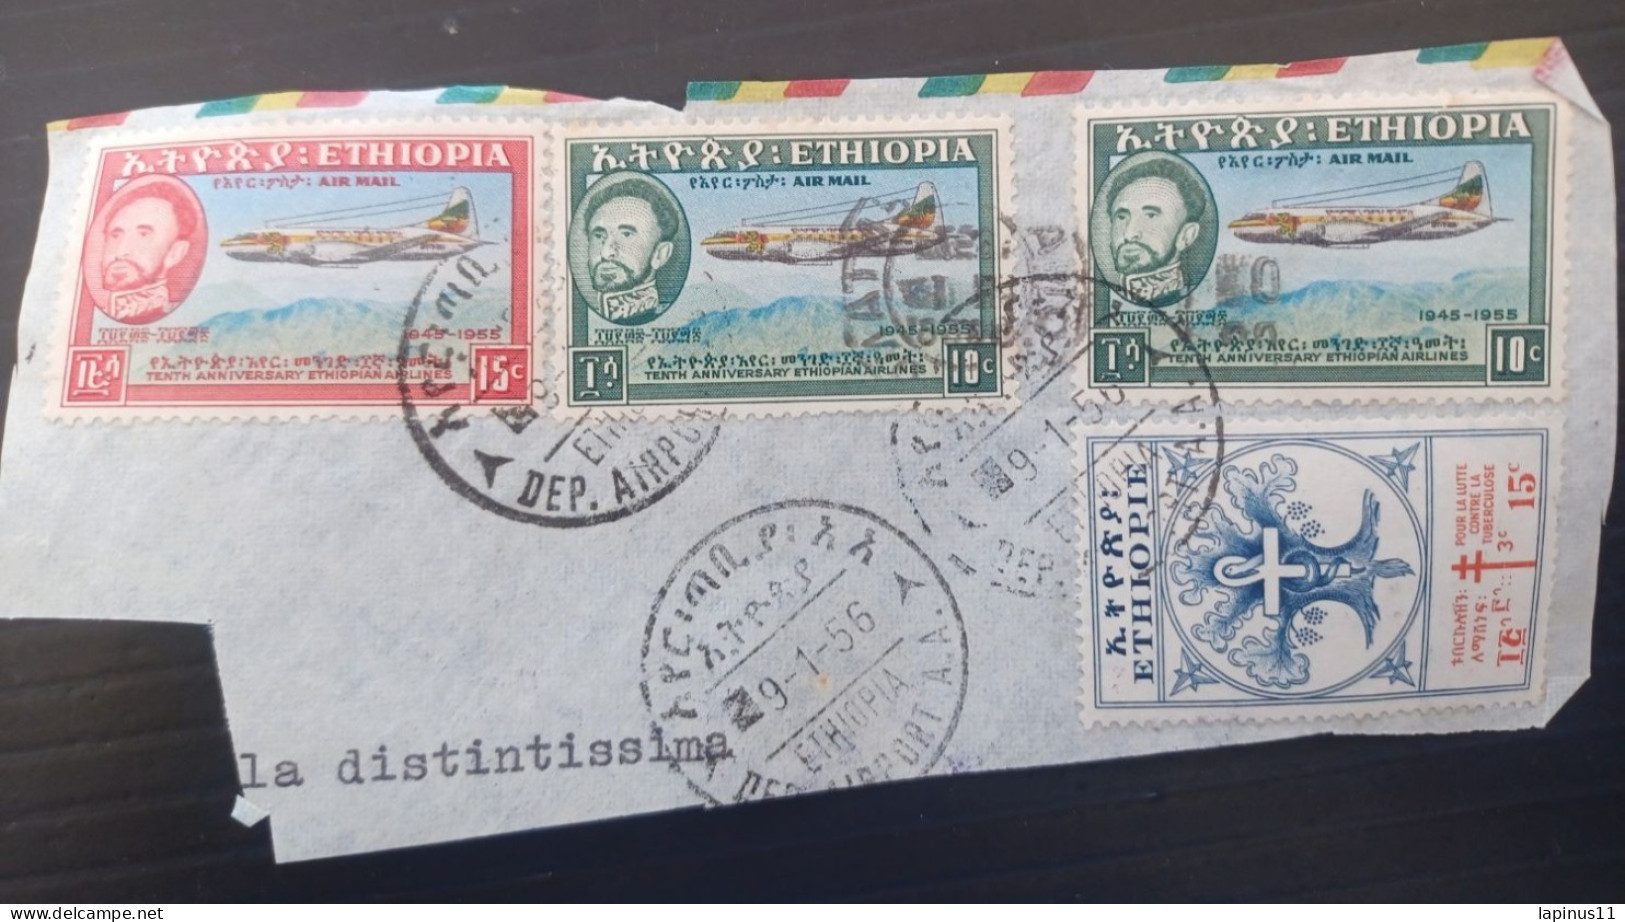 ETIOPIA 1956 AIRMAILYVERT N 304 LUTTE CONTRE LA TUBERCULOSE N 35-36 AIRMAIL FRAGMANT - Etiopia